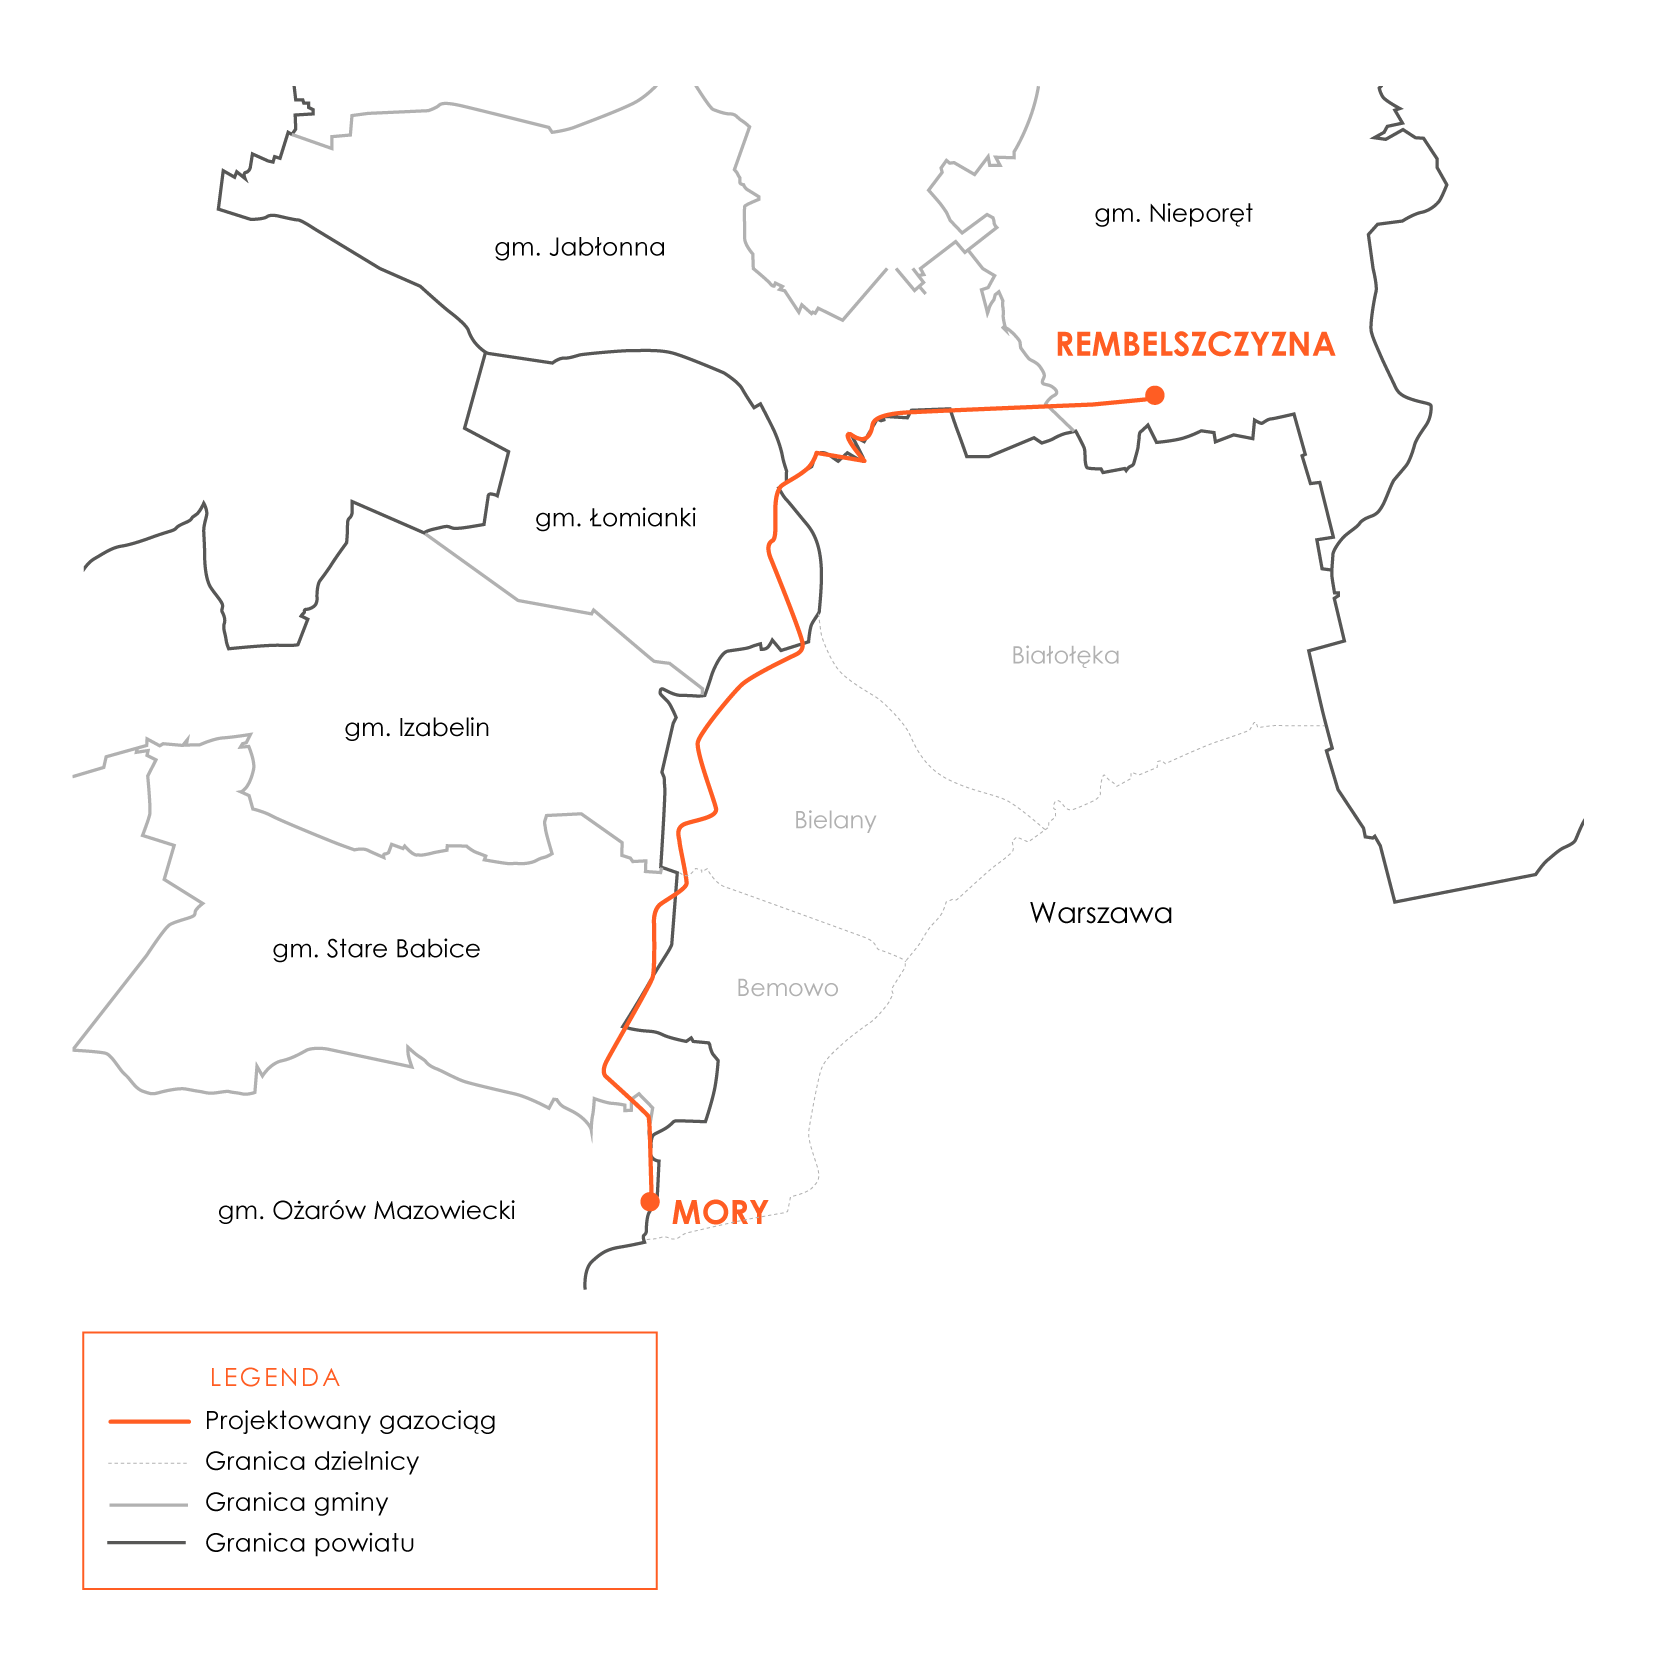 Mapka gazociągu Rembelszczyzna-Mory